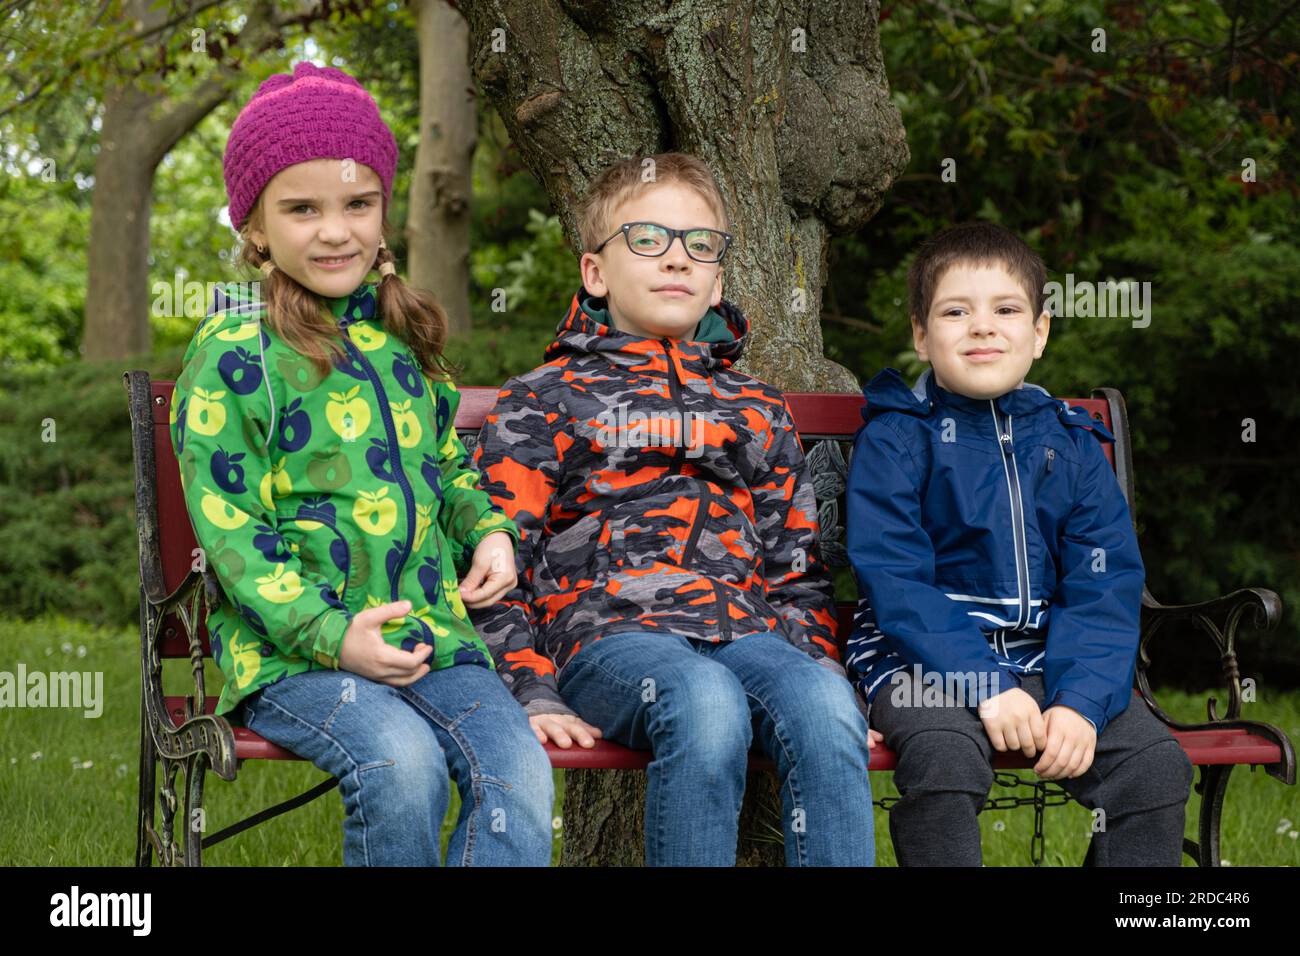 Trois enfants d'âges différents, 7, 10 et 5 ans, sont assis en vestes sur un banc au printemps Banque D'Images